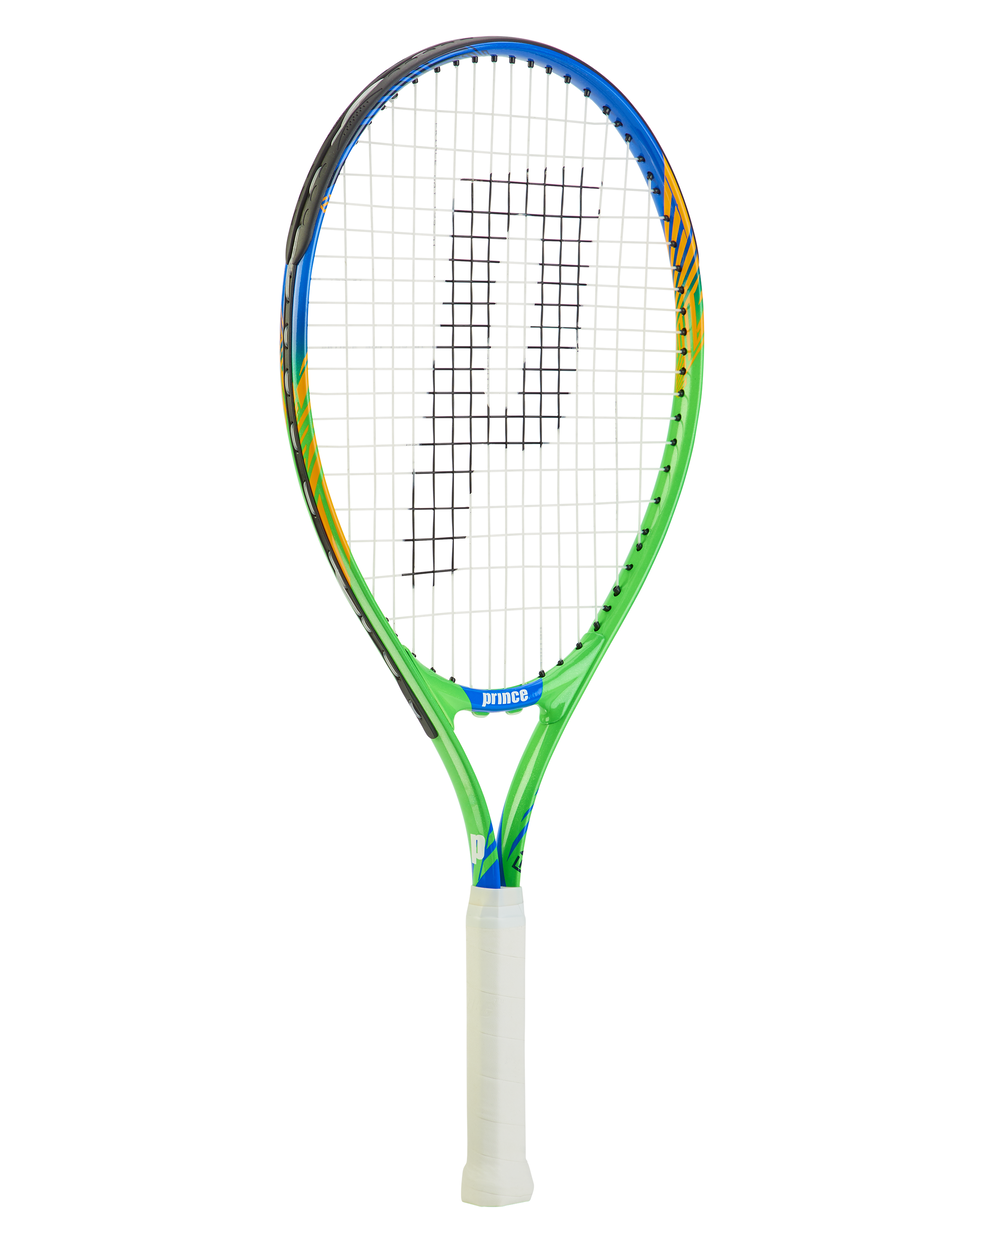 Junior Racquets — Tennis